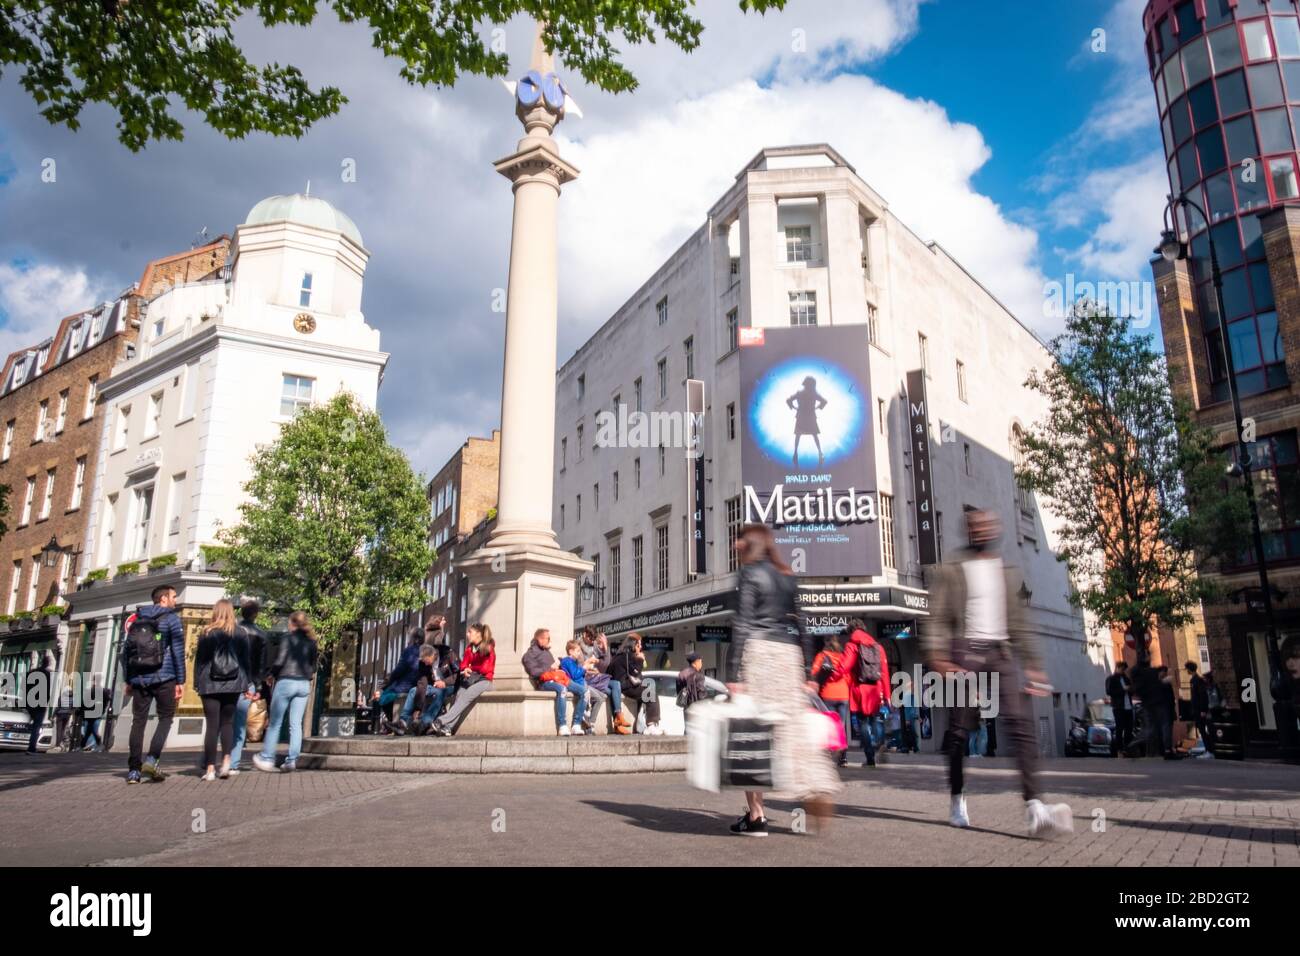 LONDRA - il Cambridge Theatre al Severn Dials nel West End di Londra che mostra Matilda The Musical Foto Stock